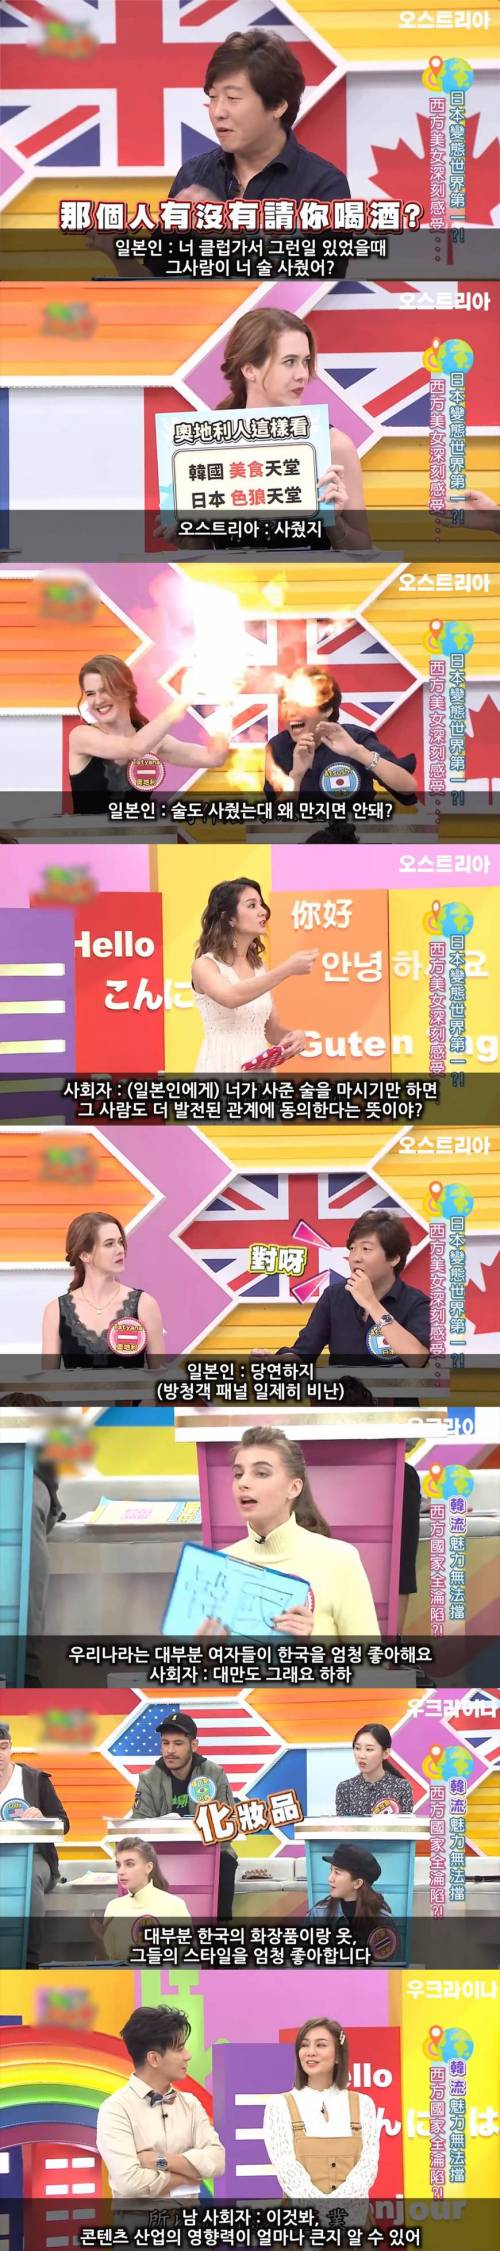 [스압] 대만방송에서 한국 칭찬하는 외국인들.jpg